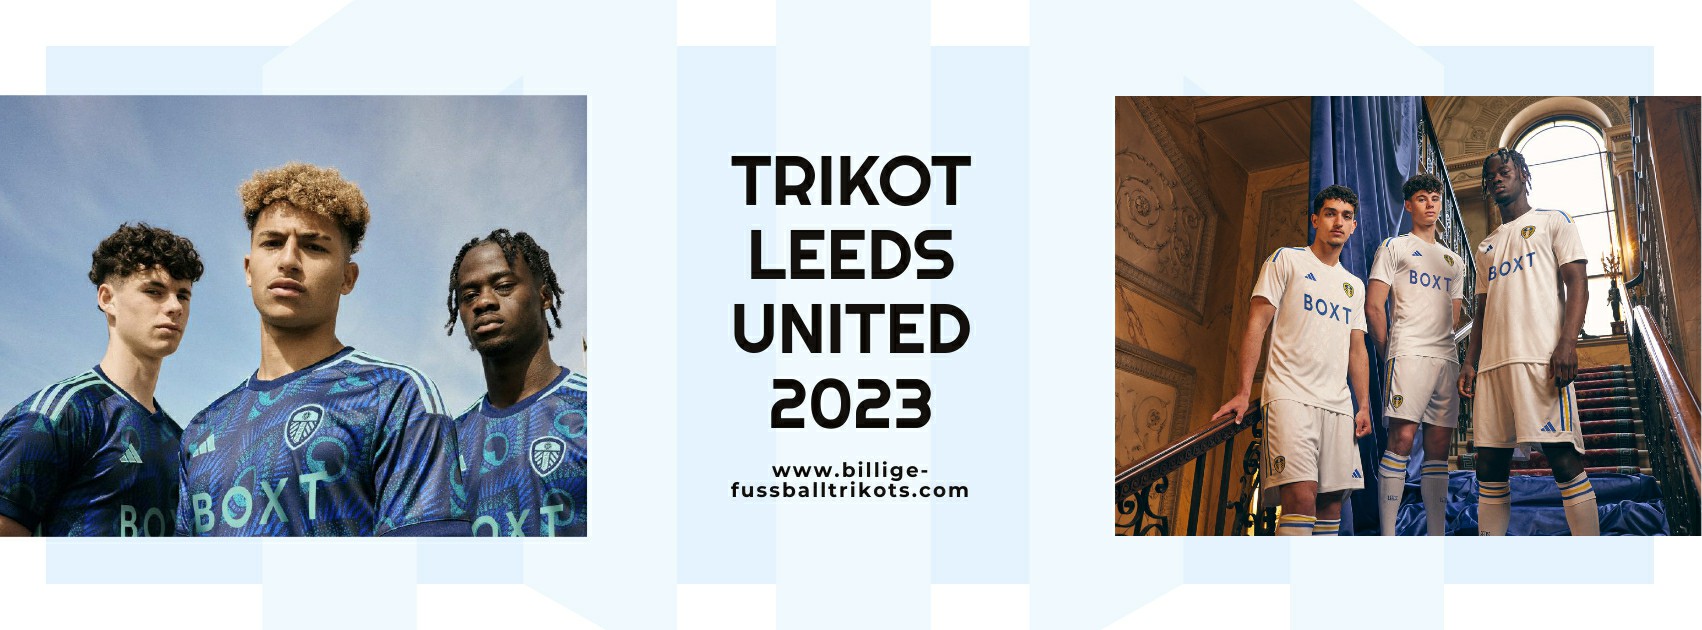 Leeds United Trikot 2023-2024